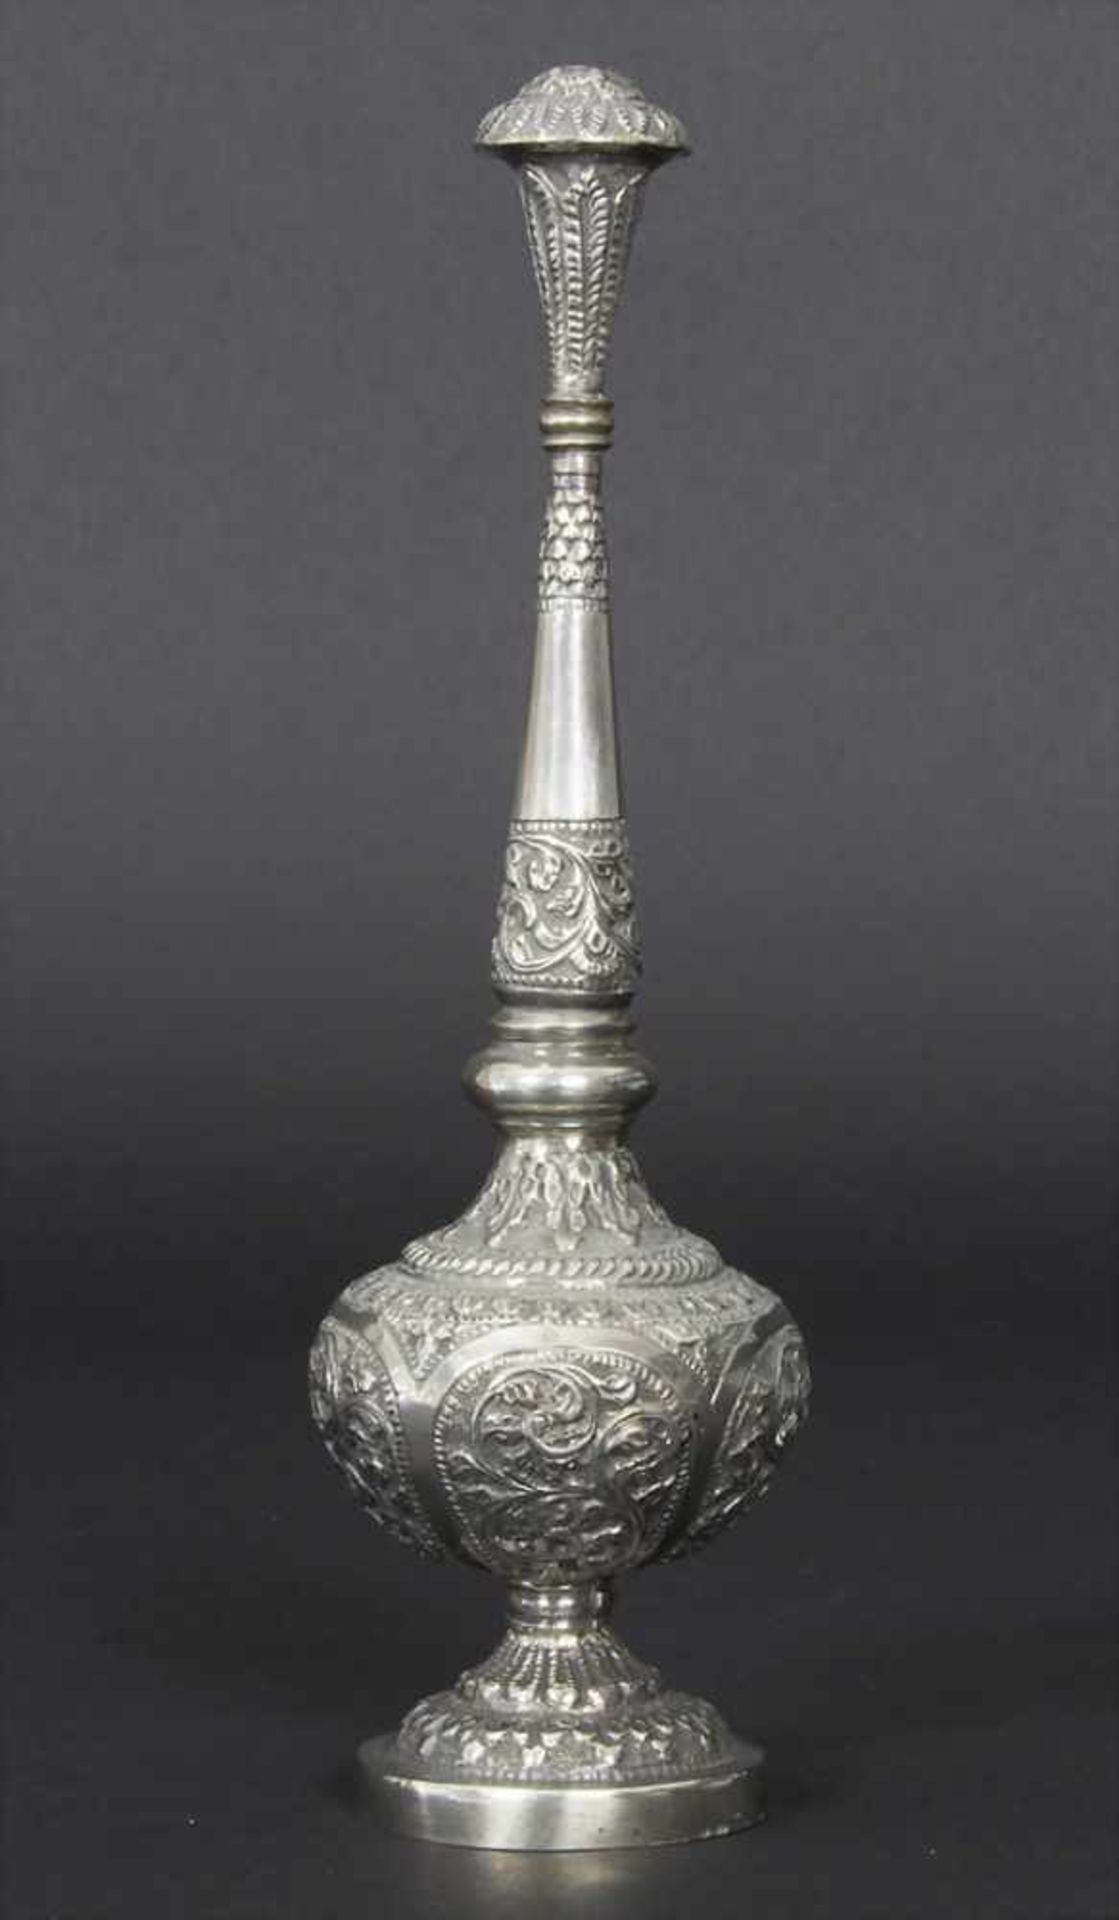 Rosenwasserflasche, Indien/Pakistan, um 1900Material: Silber mit Blättern- und Rankendekor,Marke: